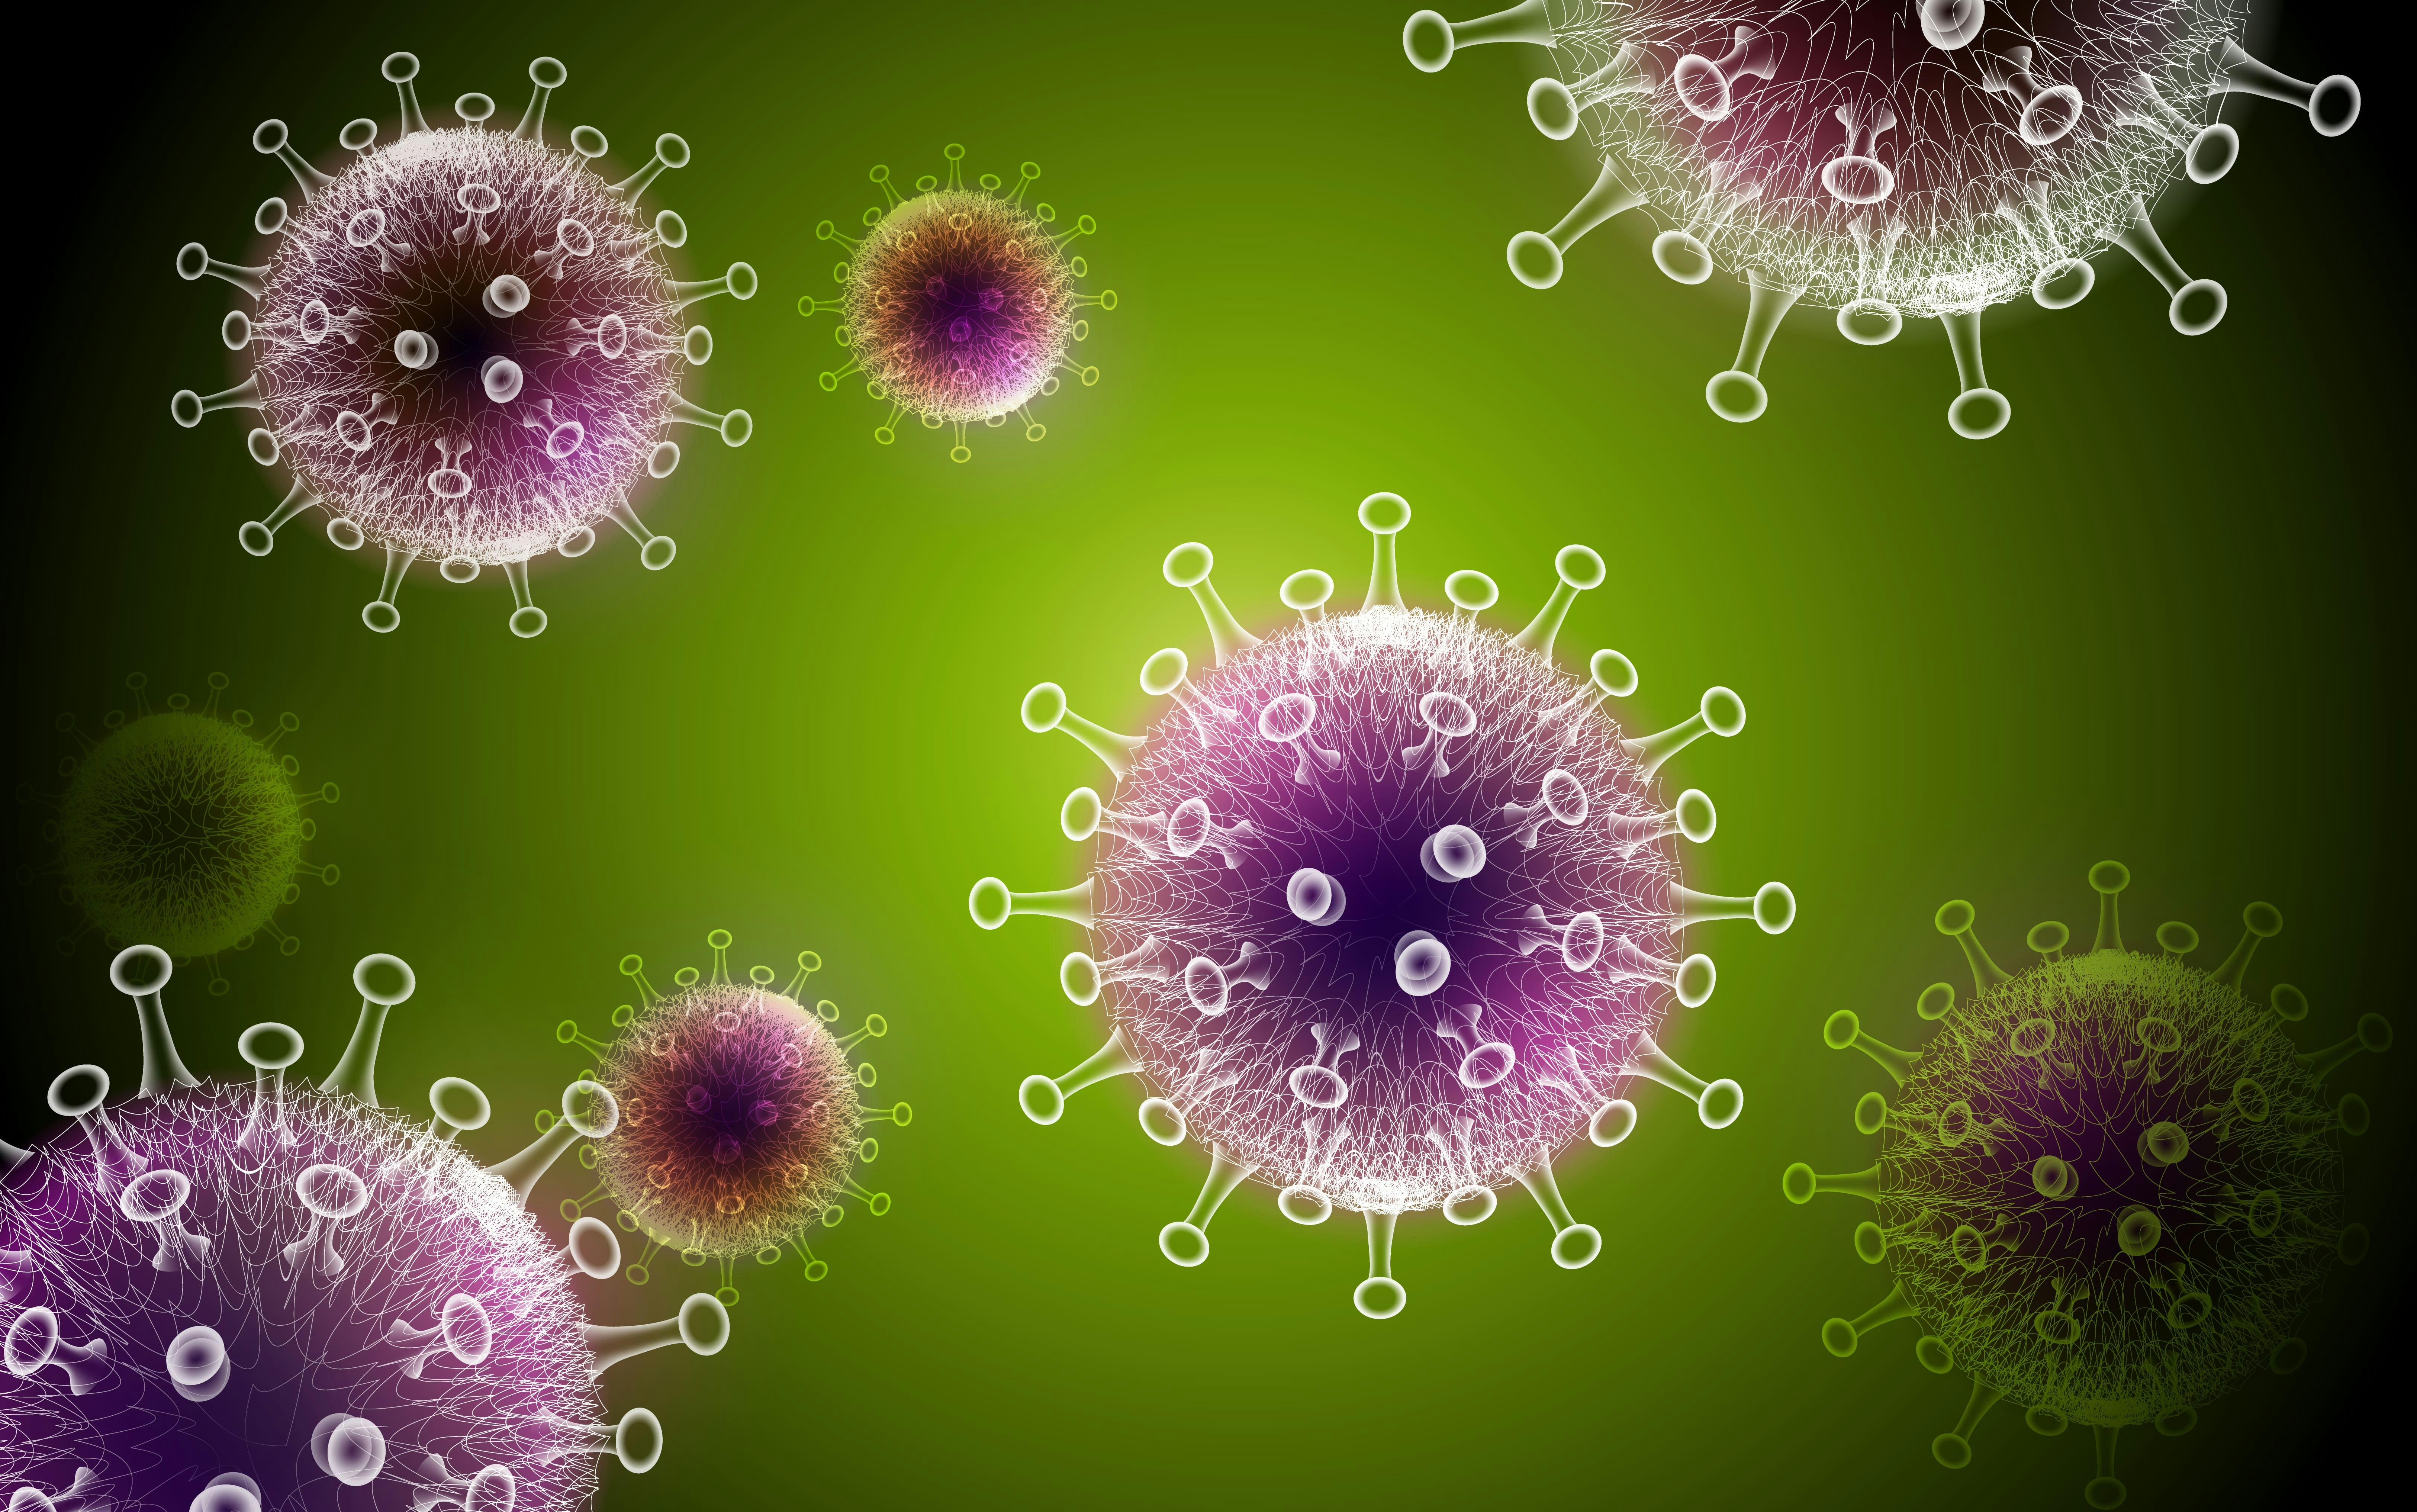 Virus Cell